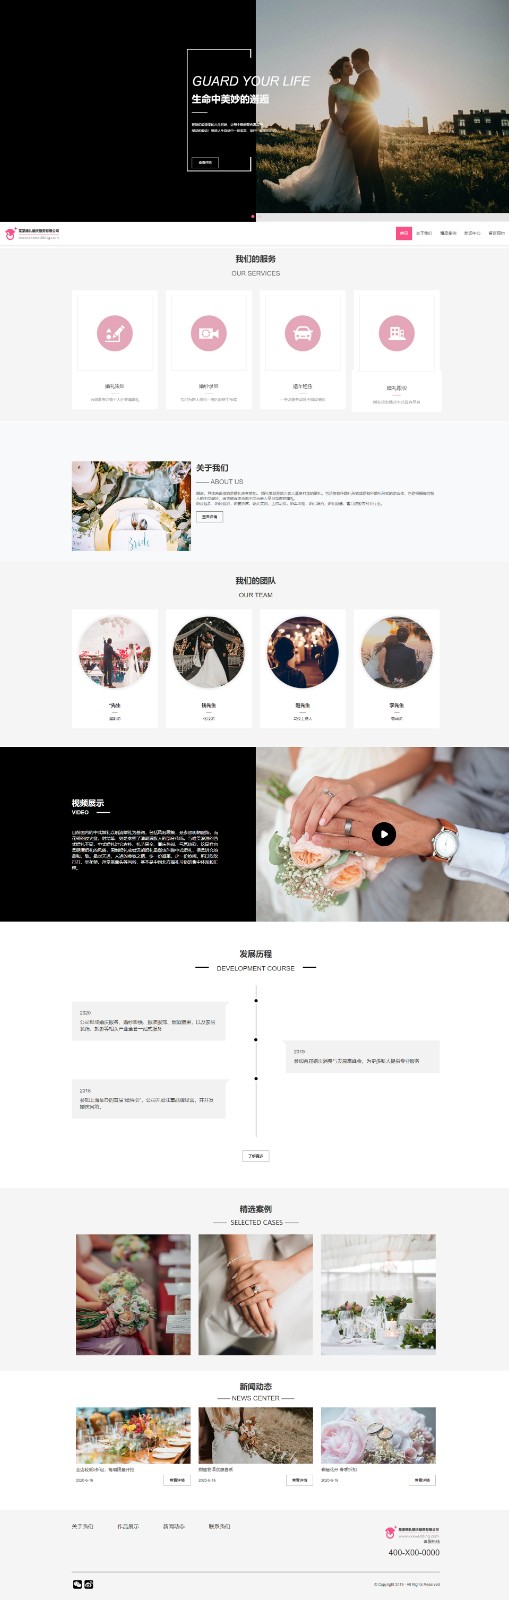 婚礼、婚庆网站模板-wedding-002